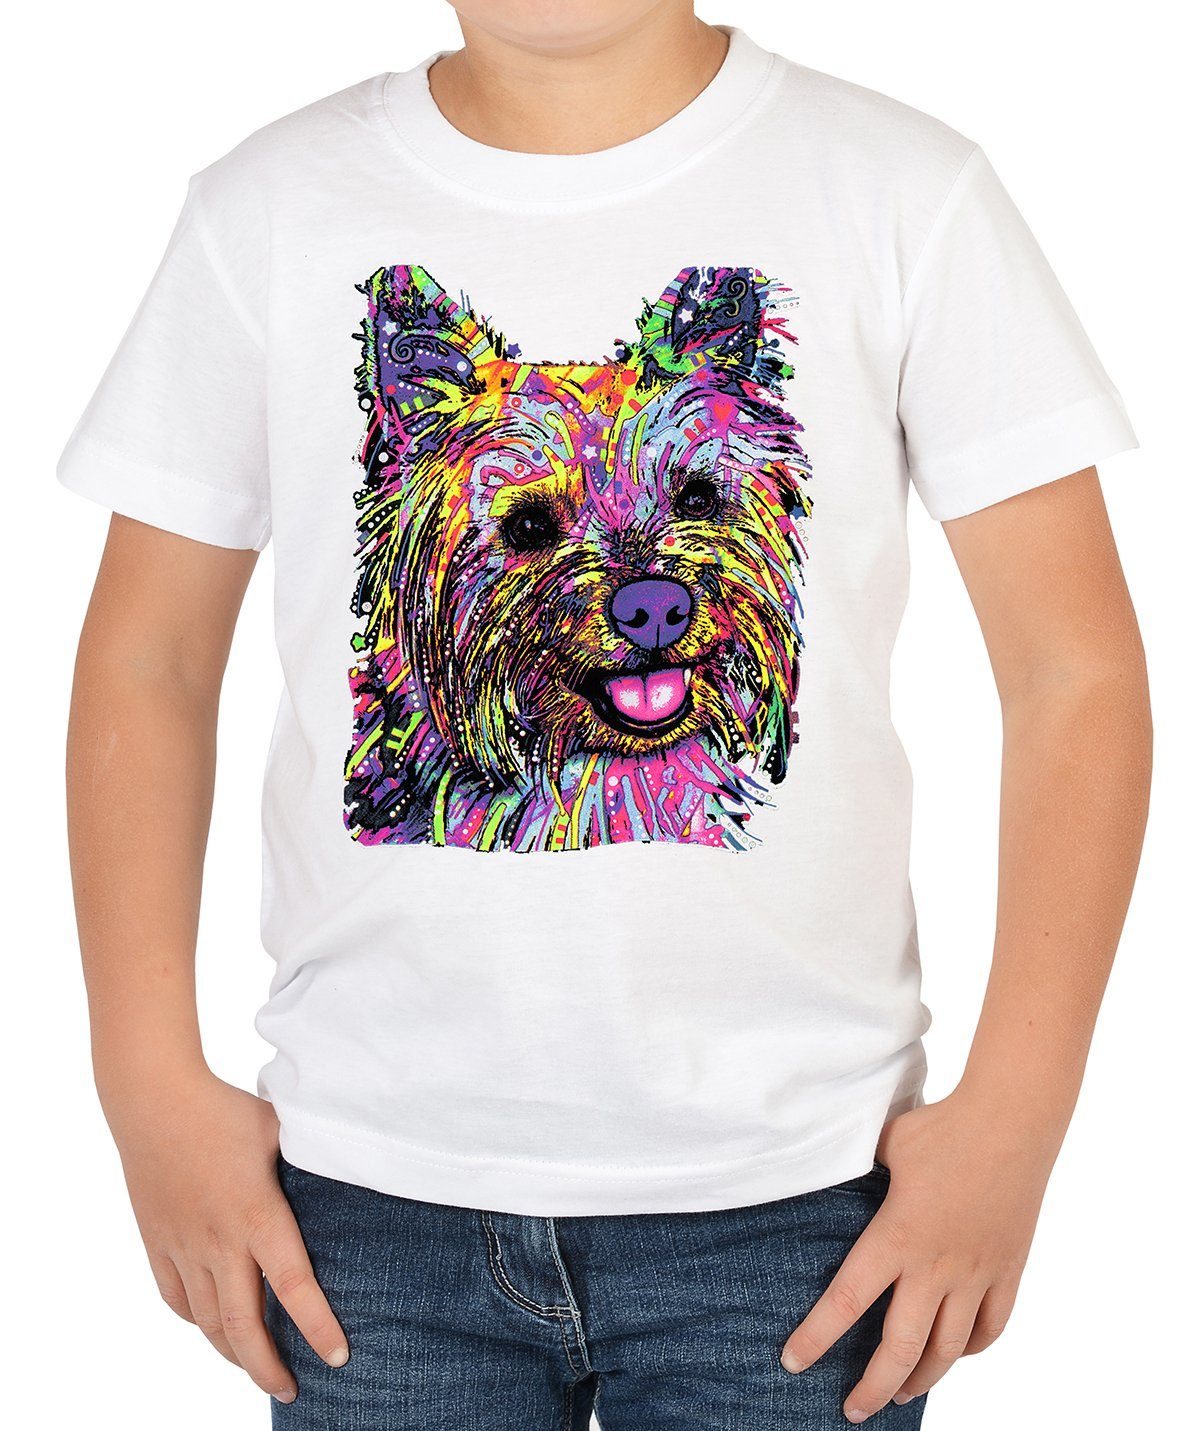 Kinder Shirts Tini - Shirts Print-Shirt Yorkshire Terrier Kinder Tshirt buntes Hundemotiv Kindershirt : Yorkie